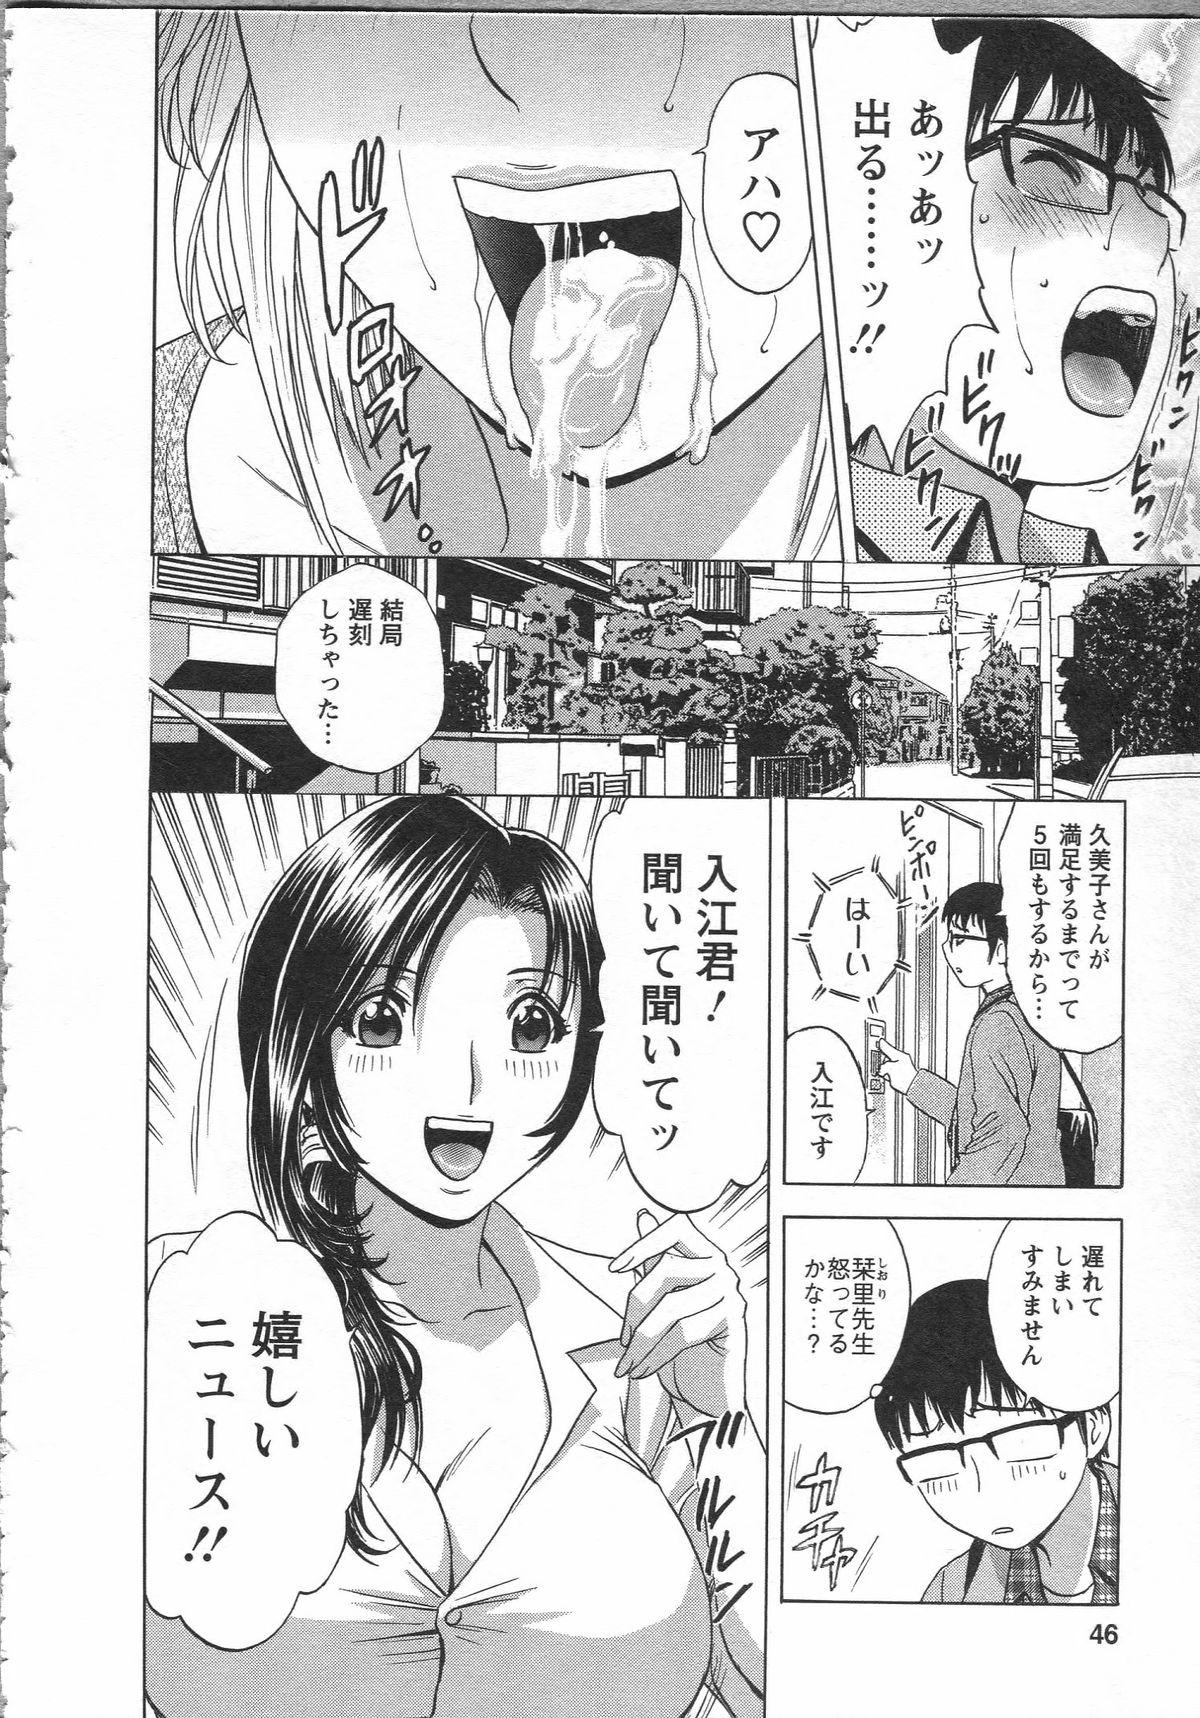 Manga no youna Hitozuma to no Hibi - Days with Married Women such as Comics. 45